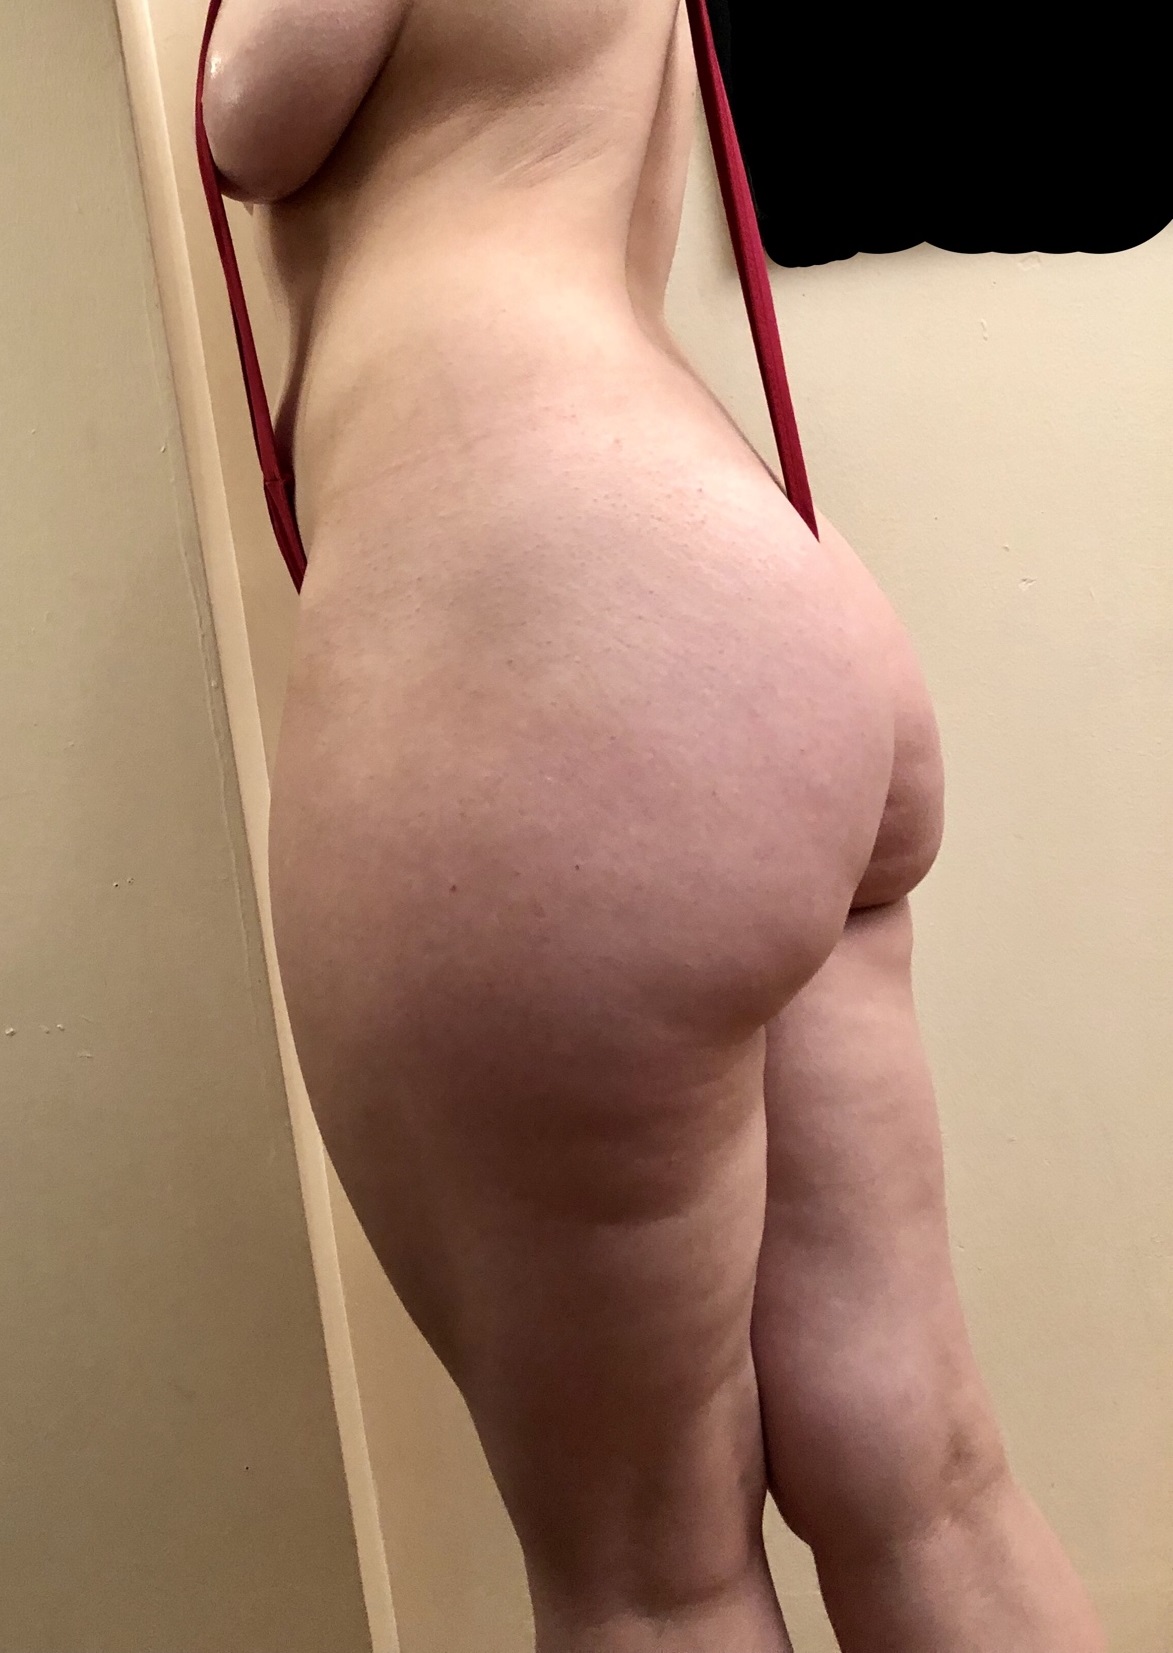 Big Ass Bikini - Big booty in a sling bikini Porn Pic - EPORNER